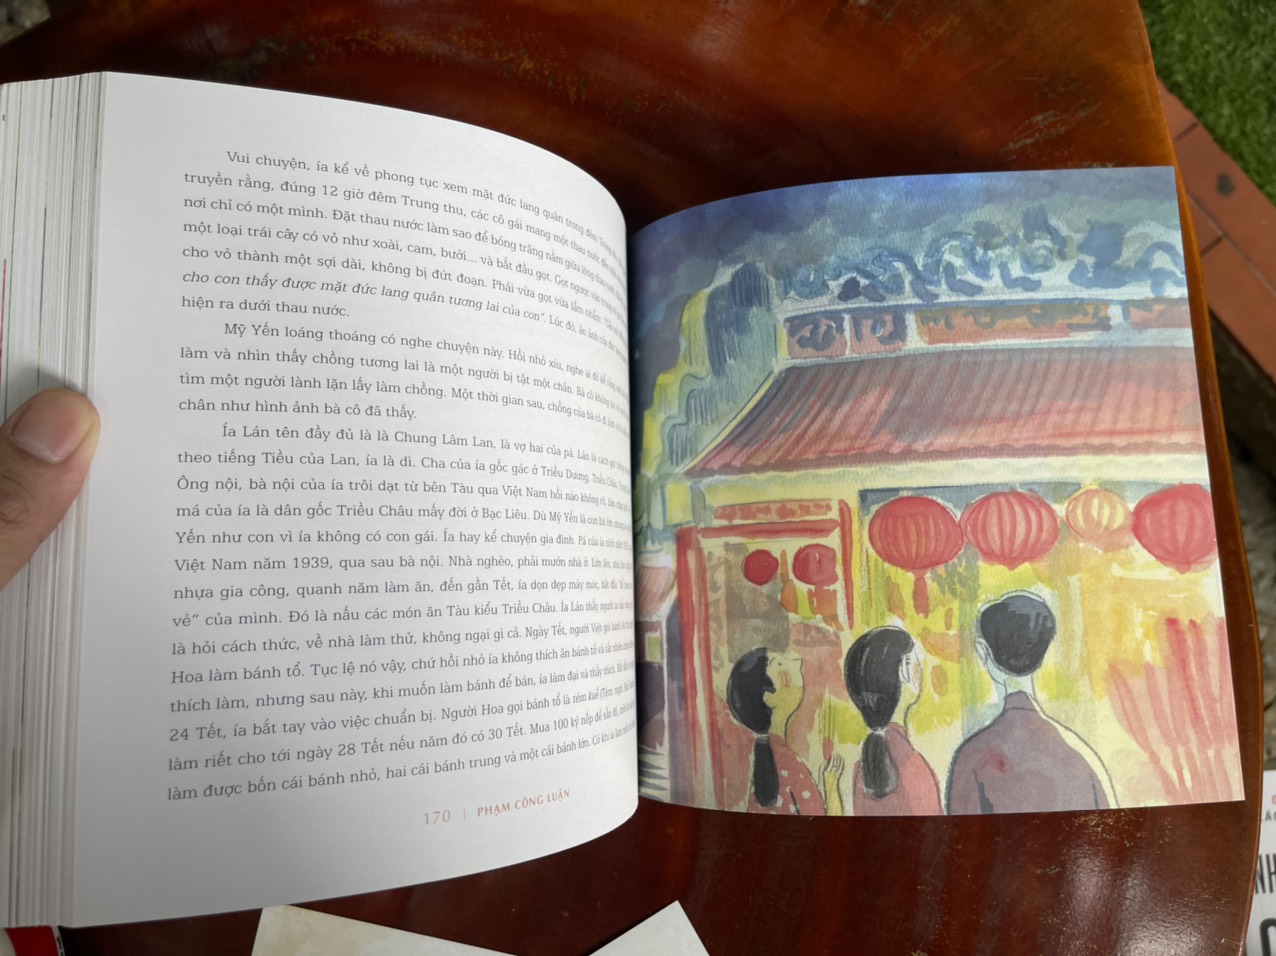 HỒN ĐÔ THỊ - Tuyển chọn từ bộ sách Sài Gòn - chuyện đời của phố – Phạm Công Luận - Kim Duẩn minh họa – Phương Nam Book - NXB Thế Giới (bìa mềm)